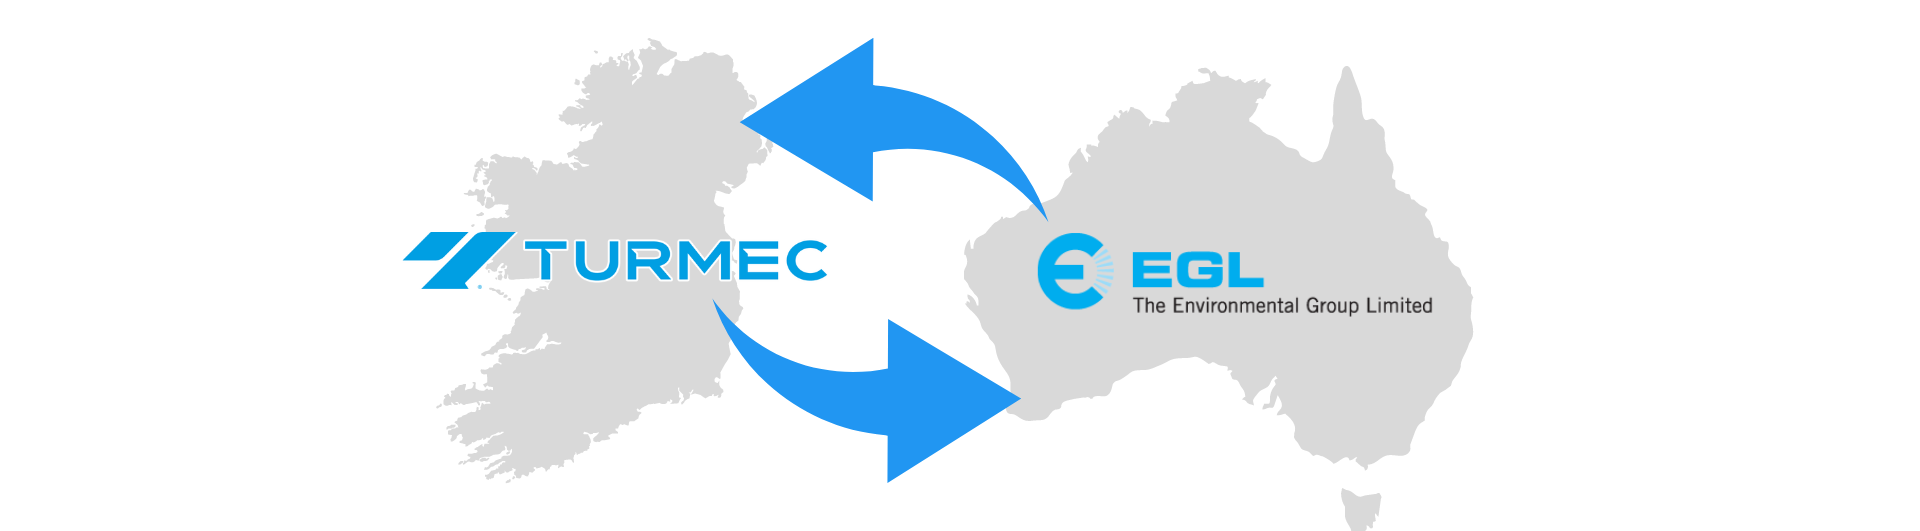 TURMEC AND EGL MAP